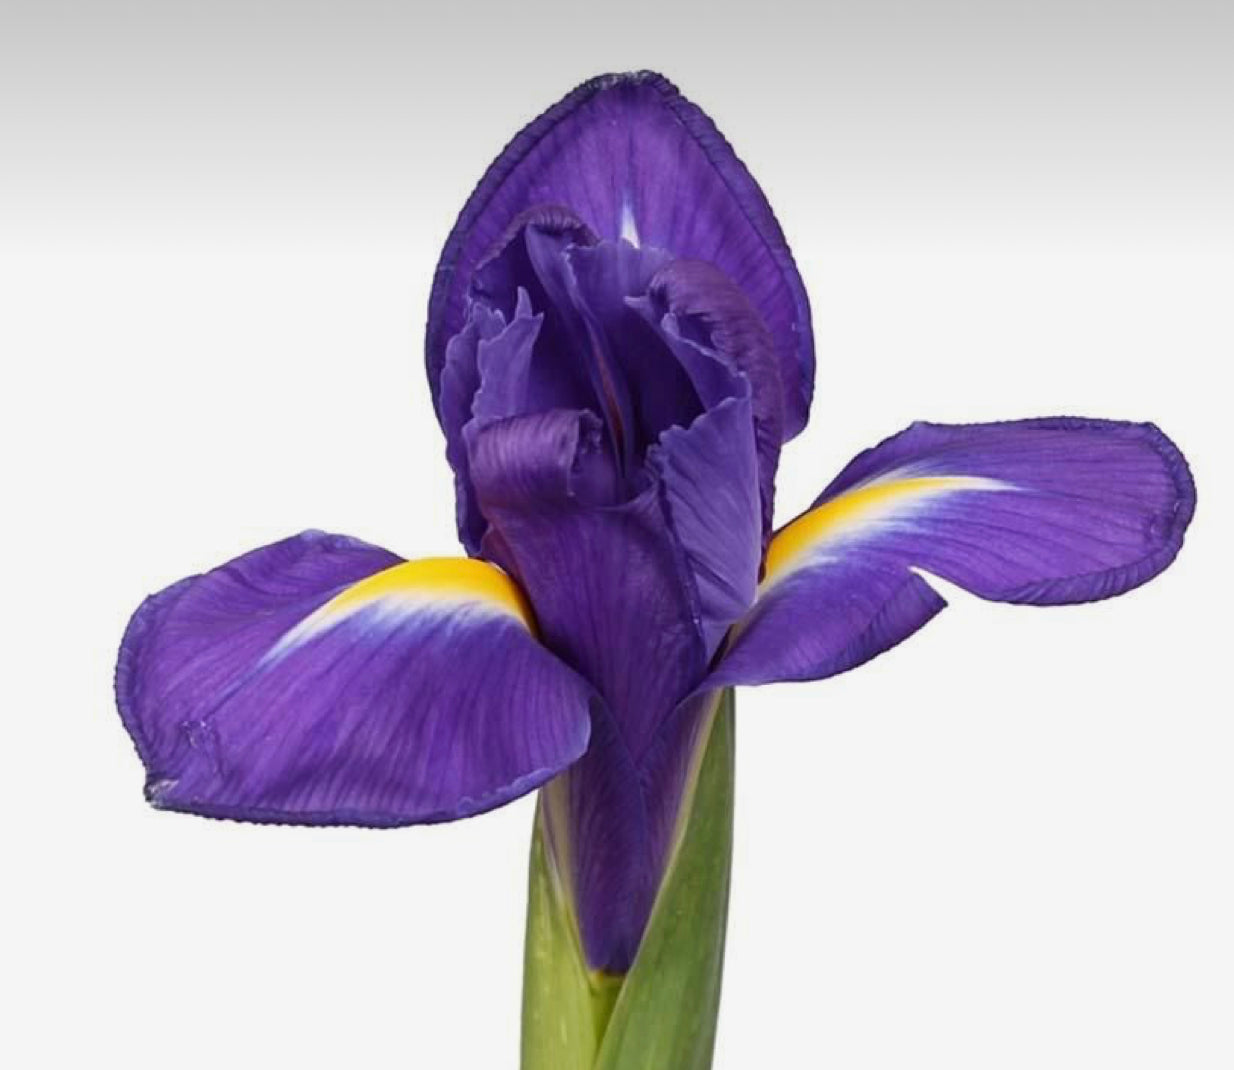 Iris stems - single